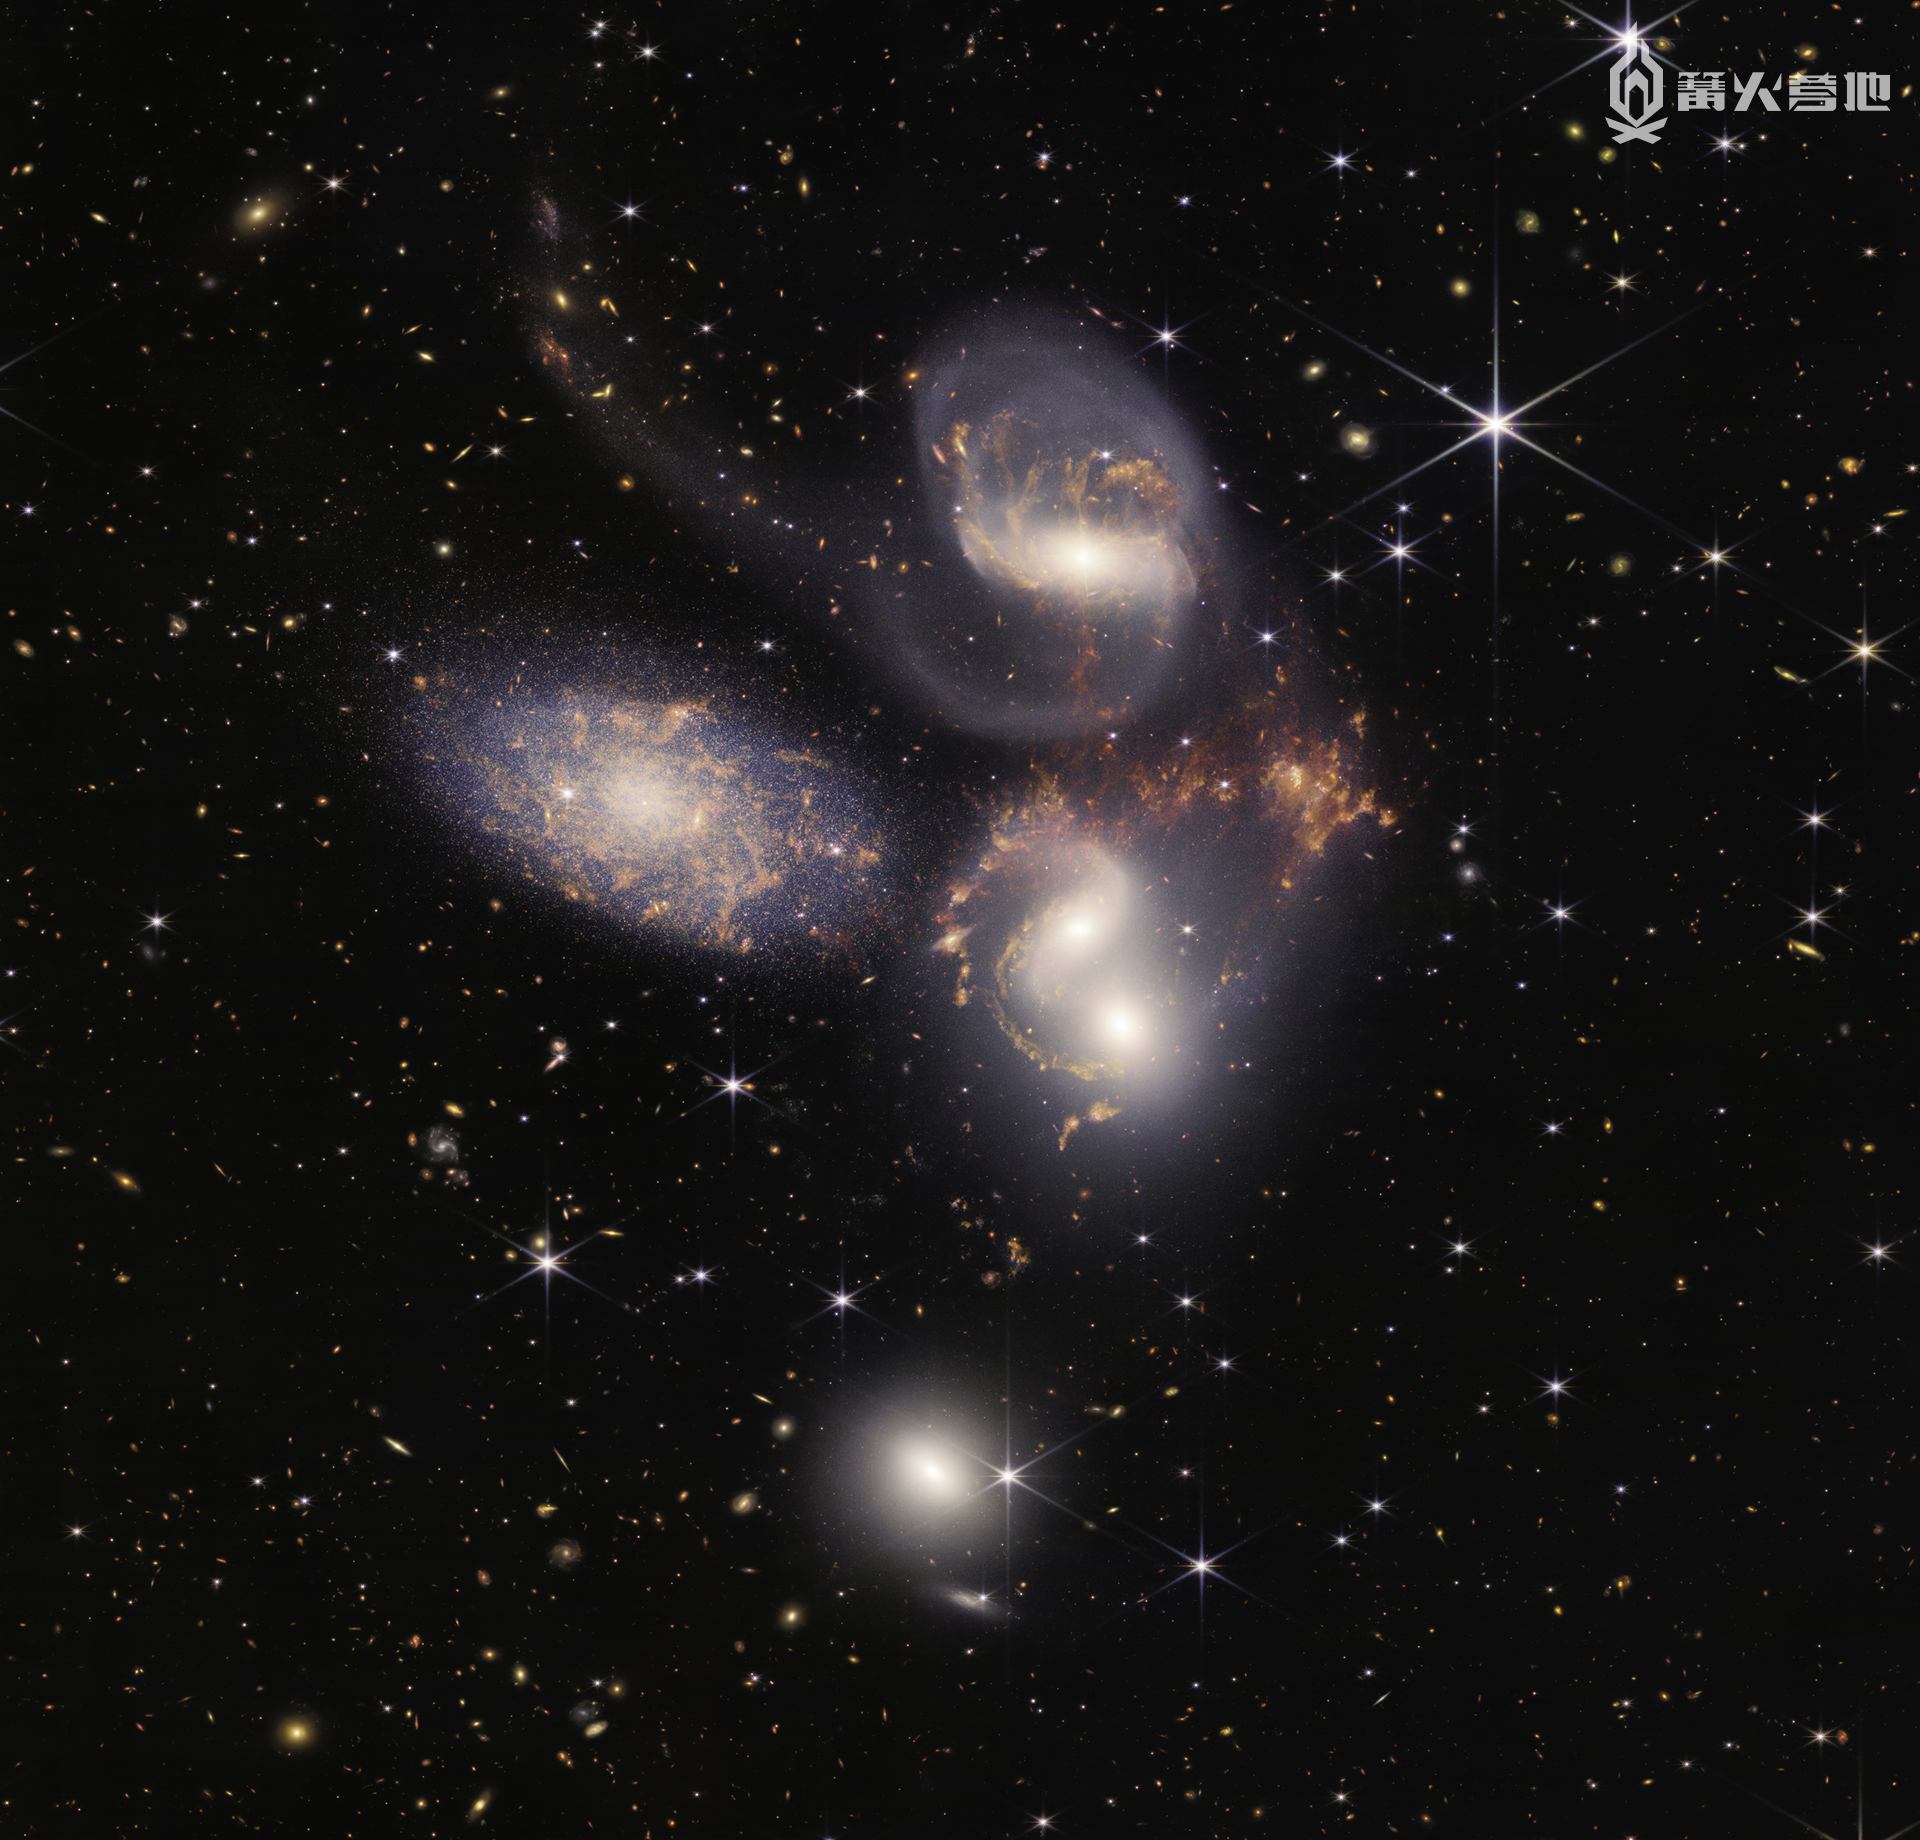 由韦伯望远镜拍摄的史蒂芬五重星系，其中包括数以百万计的星团和星爆区域，甚至包括 NGC 7318B 星系撞击星团时产生的巨大冲击波